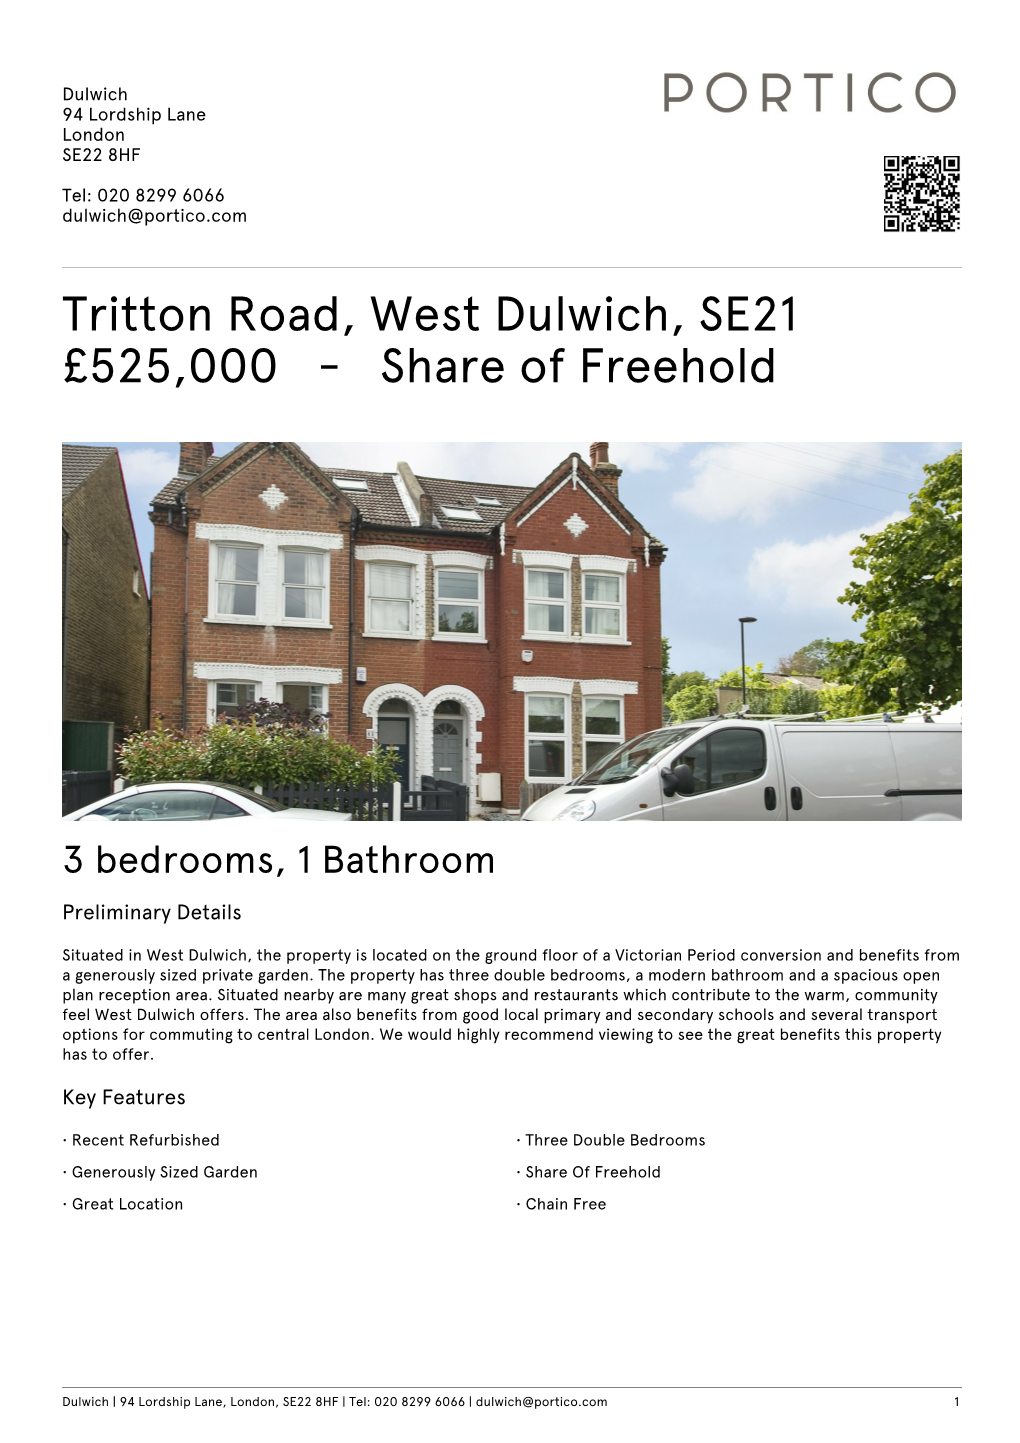 Tritton Road, West Dulwich, SE21 £525000